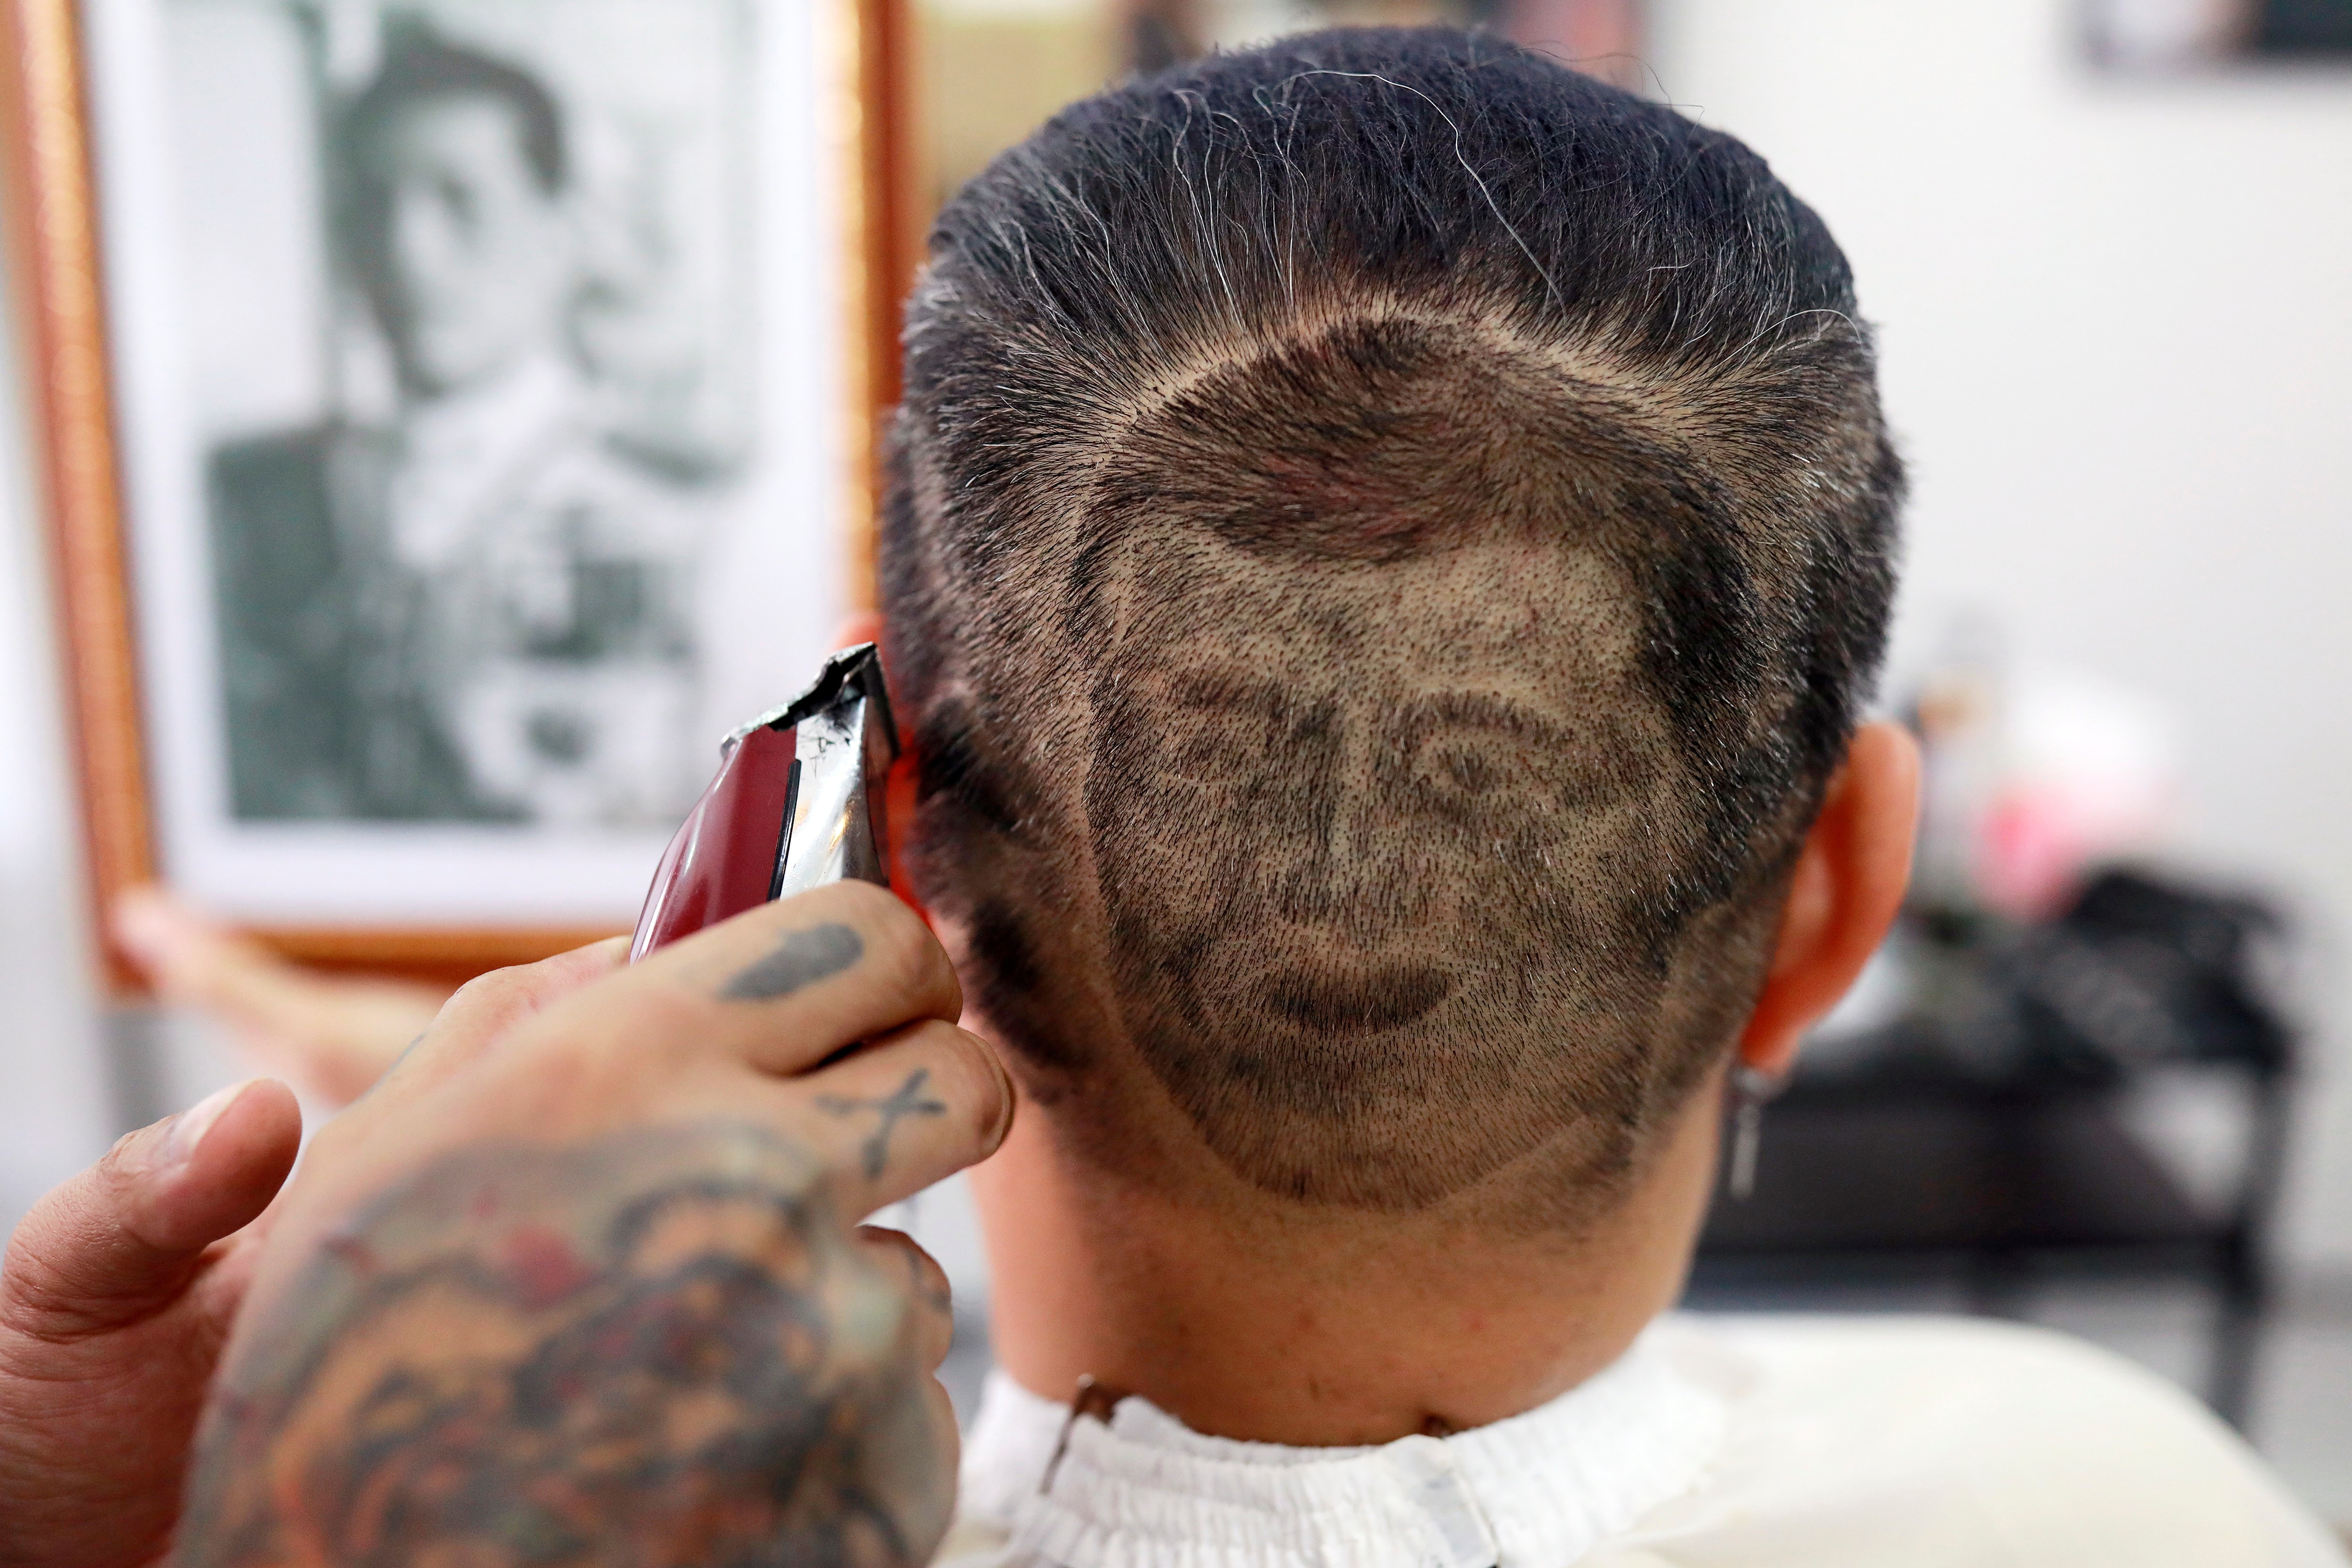 Mitree Chitinunda gets a haircut in the shape of Thai King Maha Vajiralongkorn, to mark King's 67th birthday, in a barbershop at Bangkok, Thailand July 28, 2019. Photo: Reuters